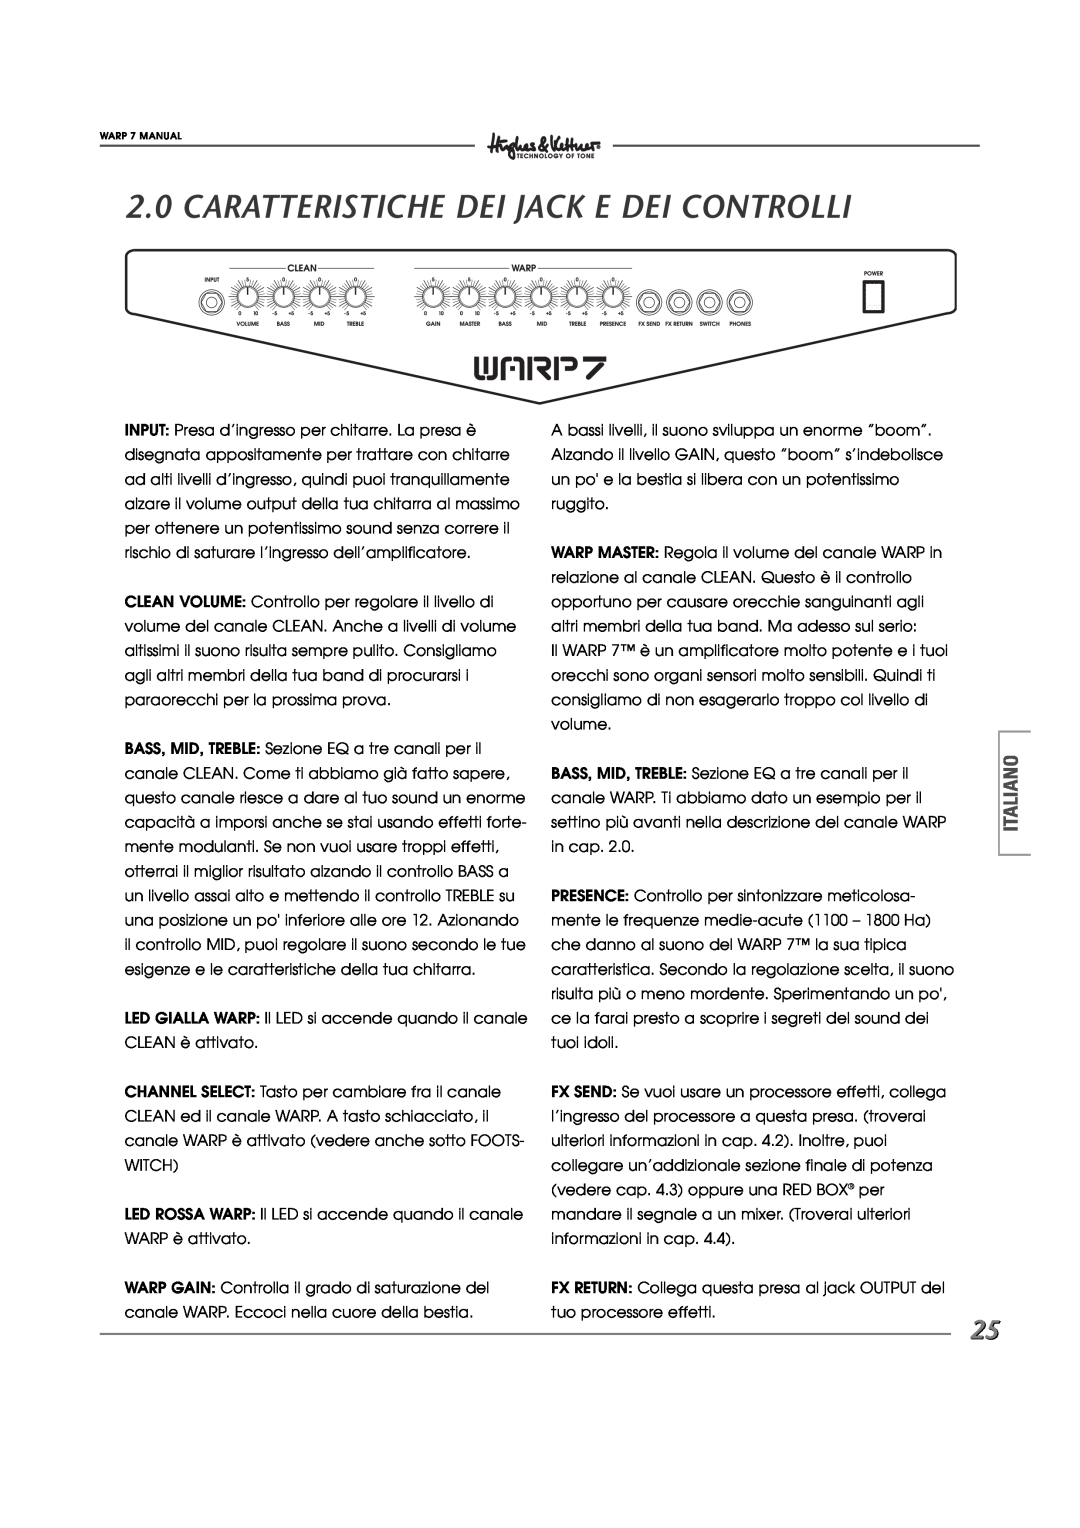 Hughes WARP7 manual Caratteristiche Dei Jack E Dei Controlli, Italiano 